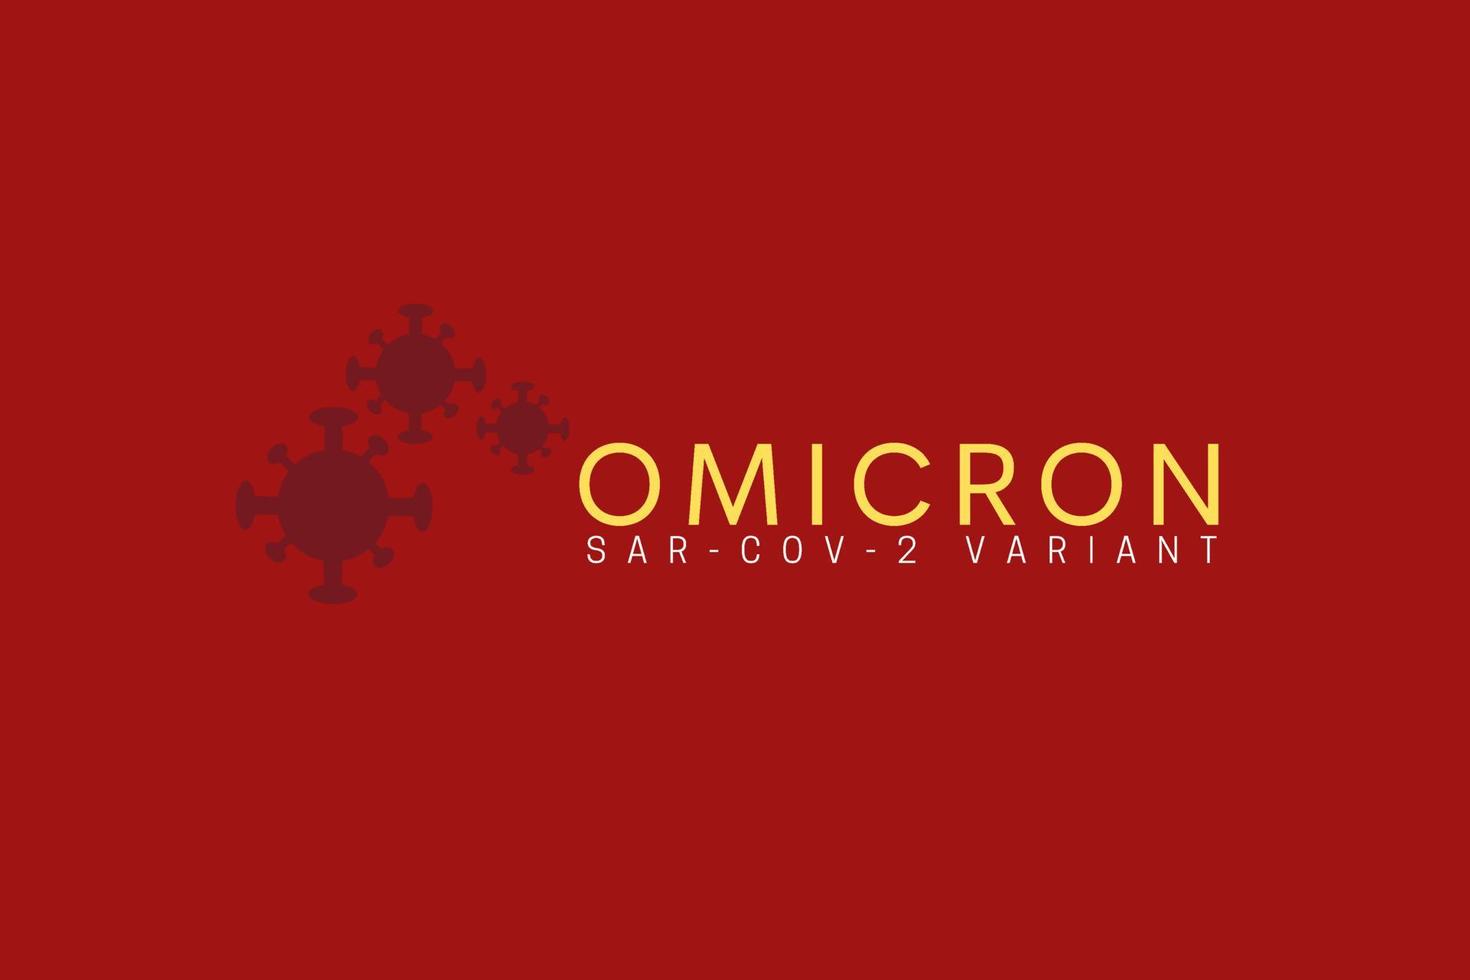 Illustration oder Banner oder Flyer für die neue Variante des Corona-Virus, nämlich das Corona-Virus Omicron vektor